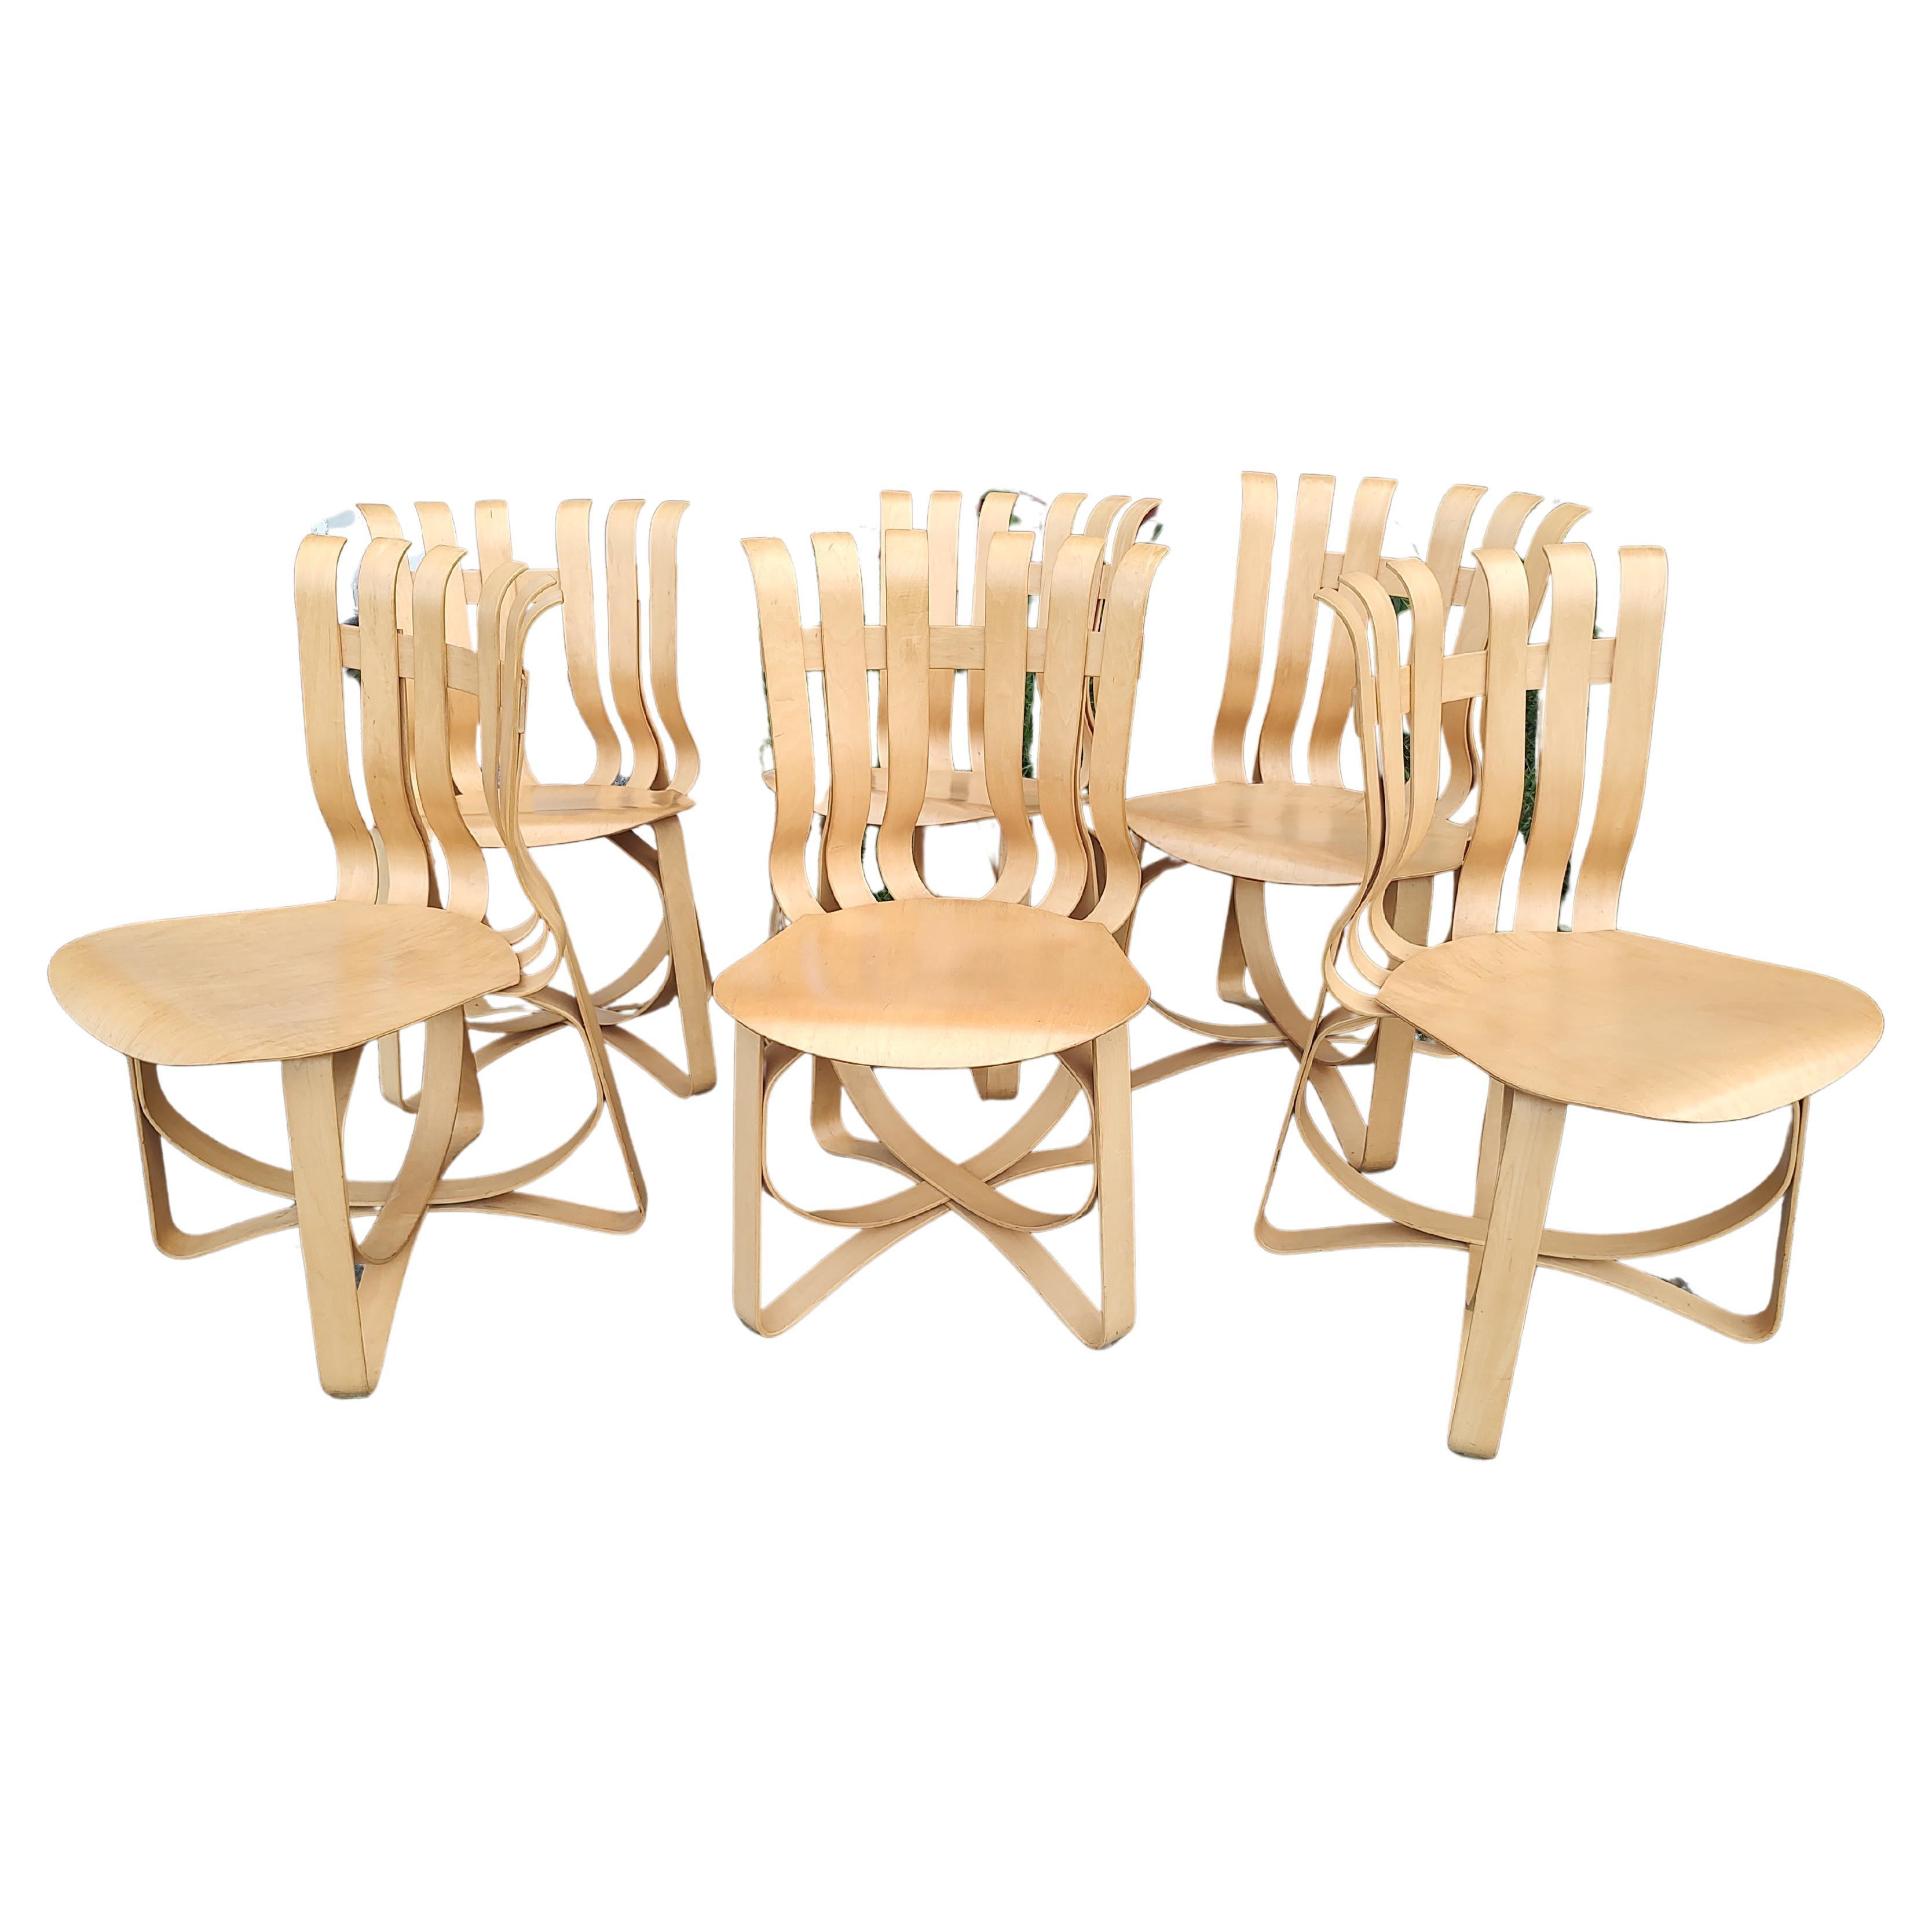 6 chaises sculpturales en bouleau mi-siècle modernes Hat Trick de Frank Gehry - Knoll